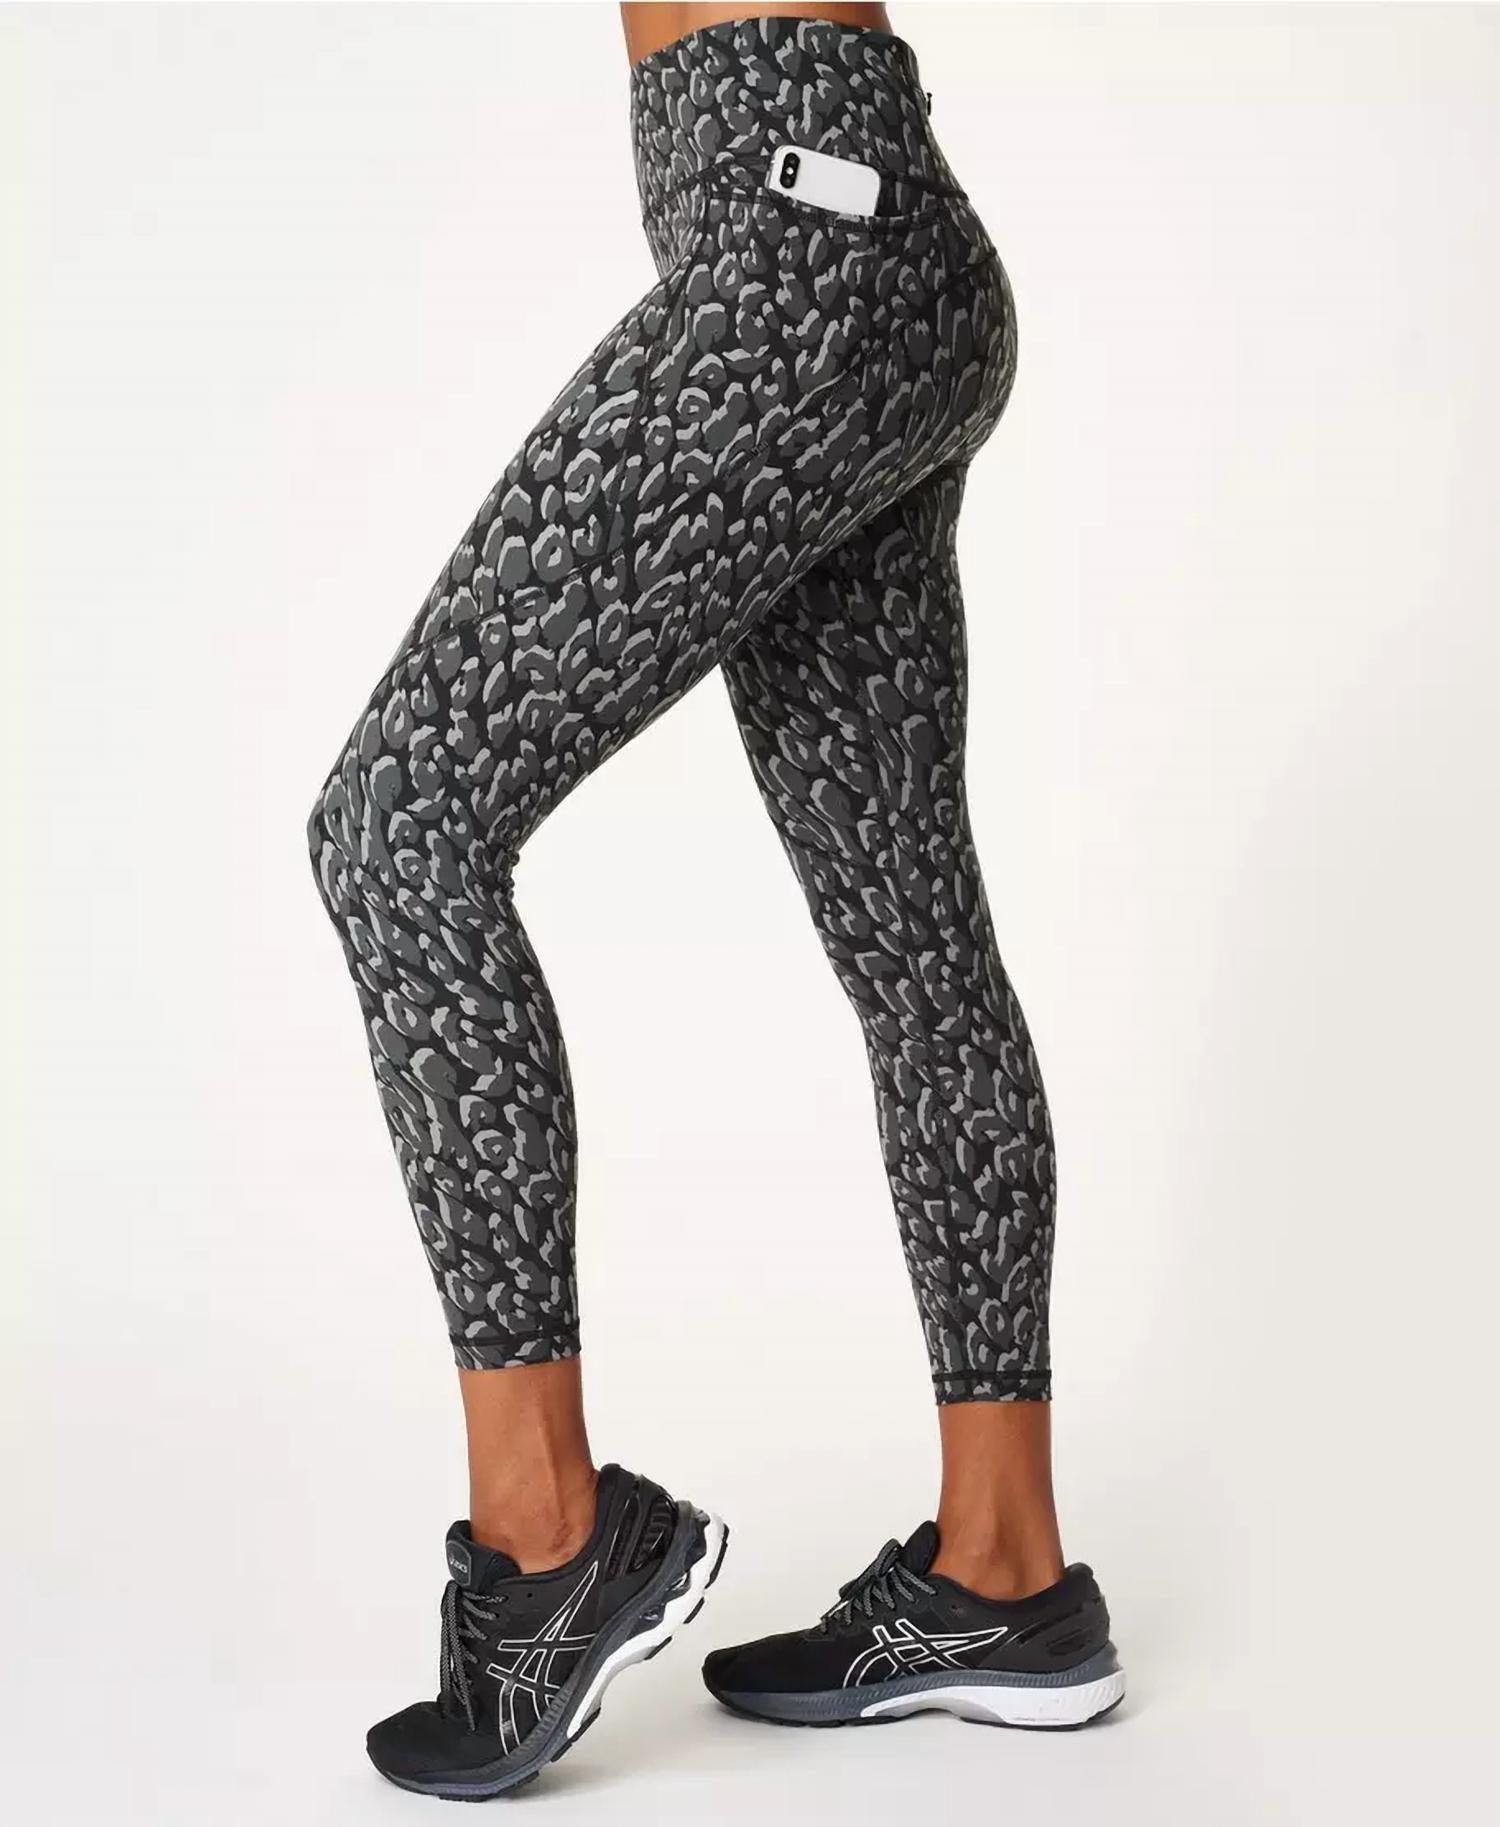 Sweaty Betty Power 7/8 Workout Leggings In Black Tonal Leopard Print